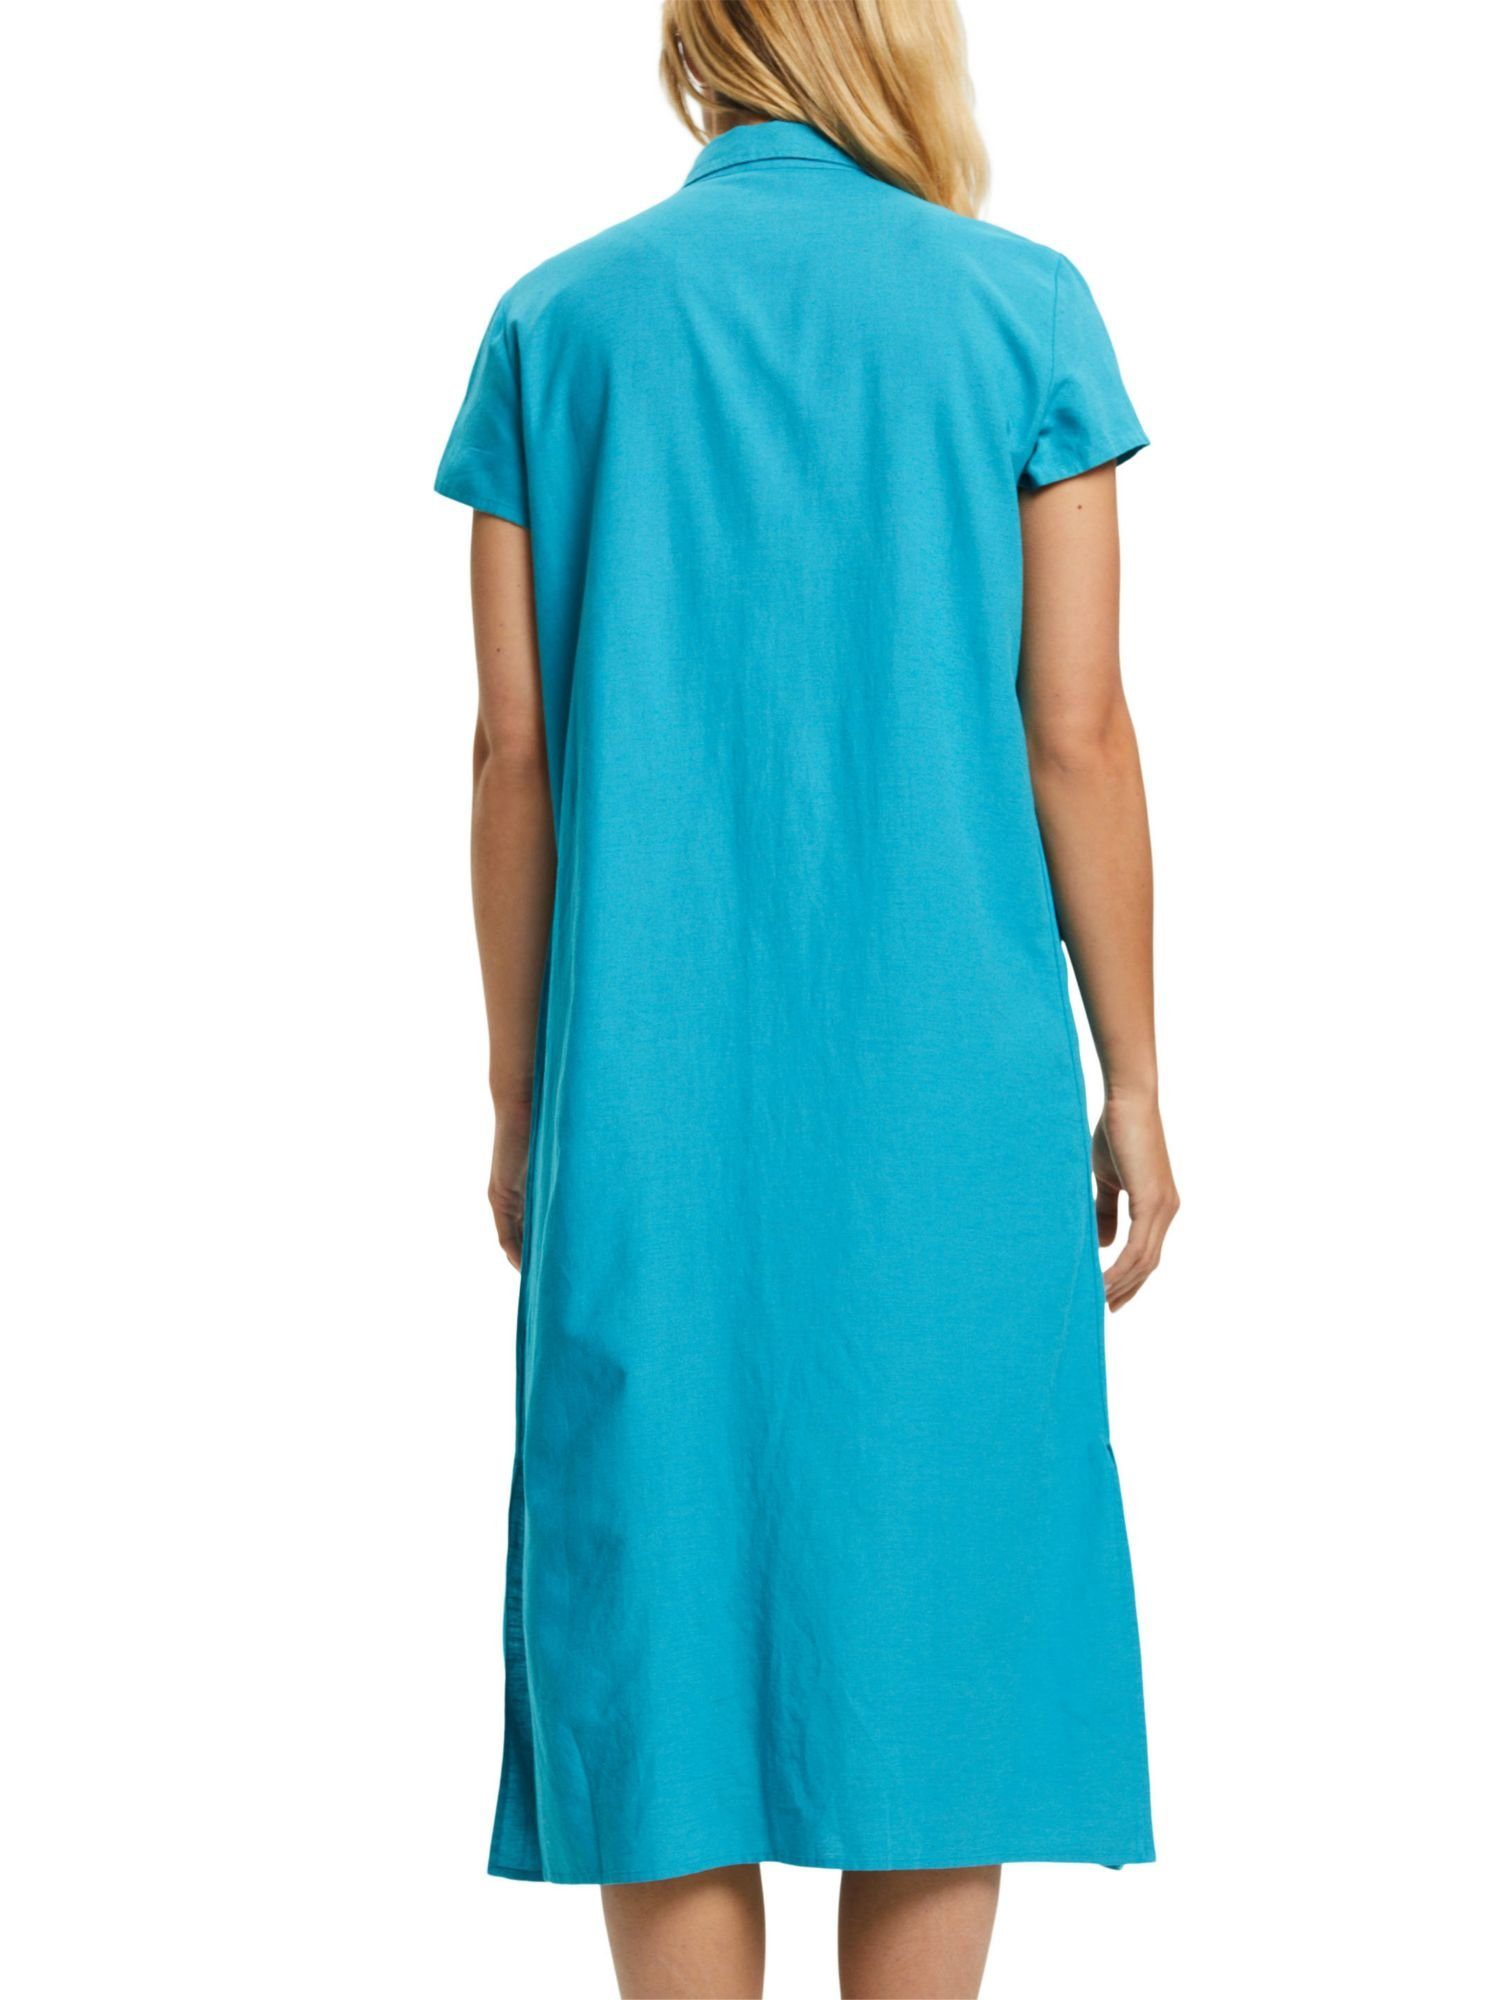 Blusenkleid Leinen Esprit Strandkleid mit TEAL BLUE